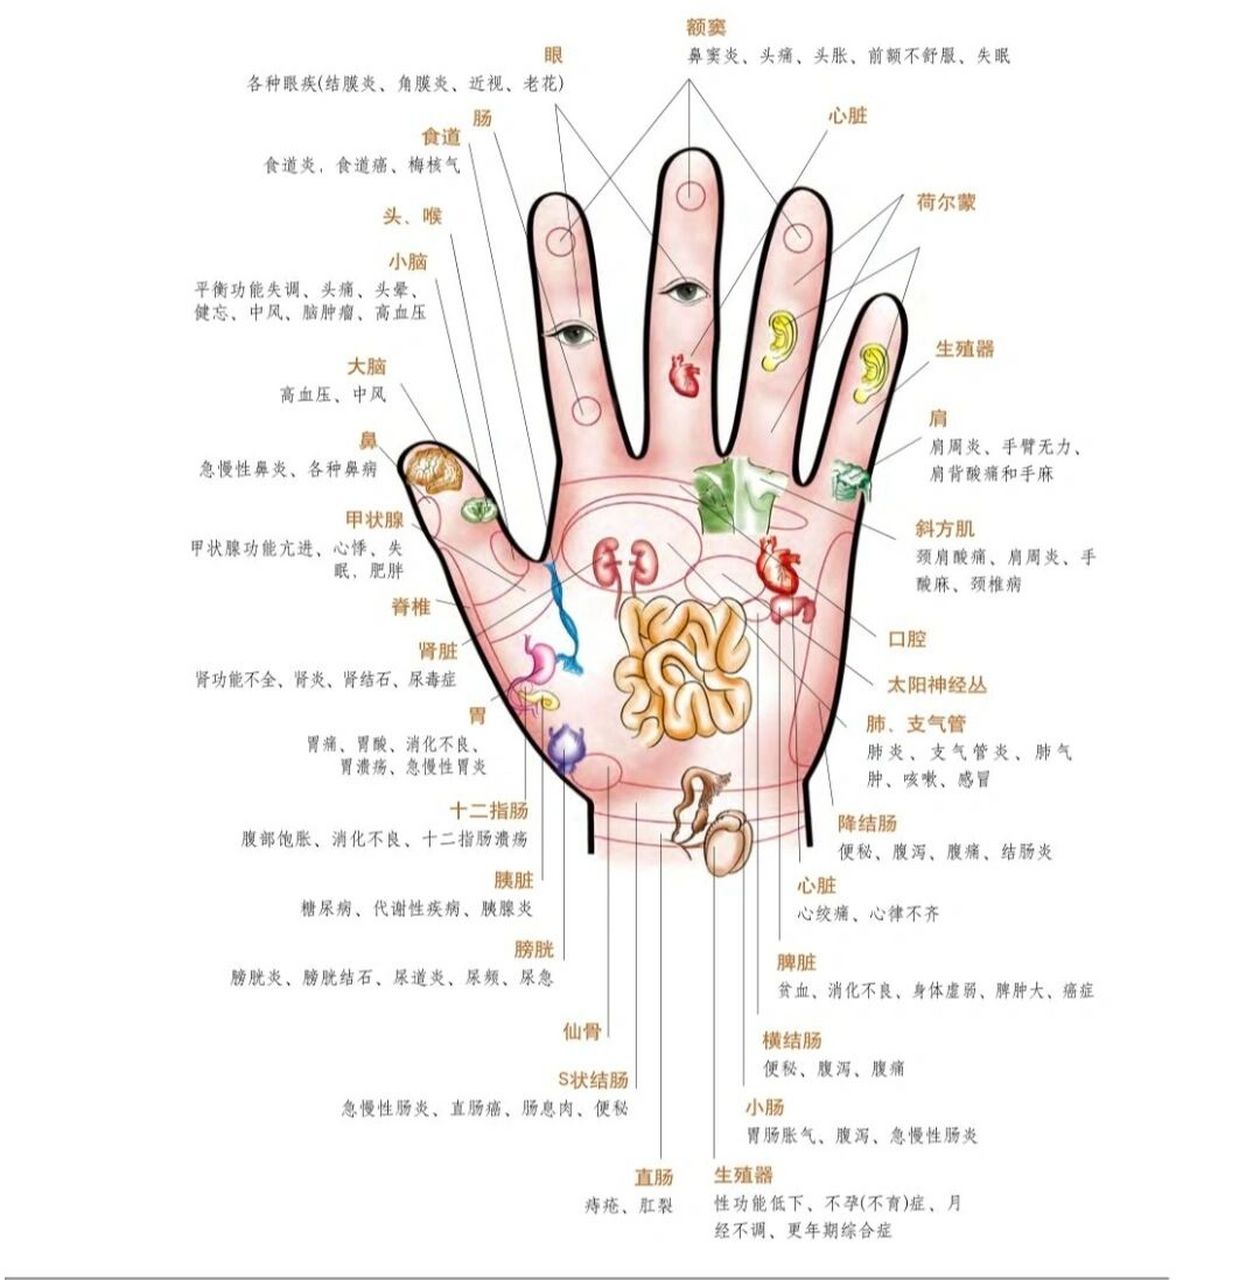 掌纹,指纹,指节纹,手掌软硬及手掌颜色等揭示人体